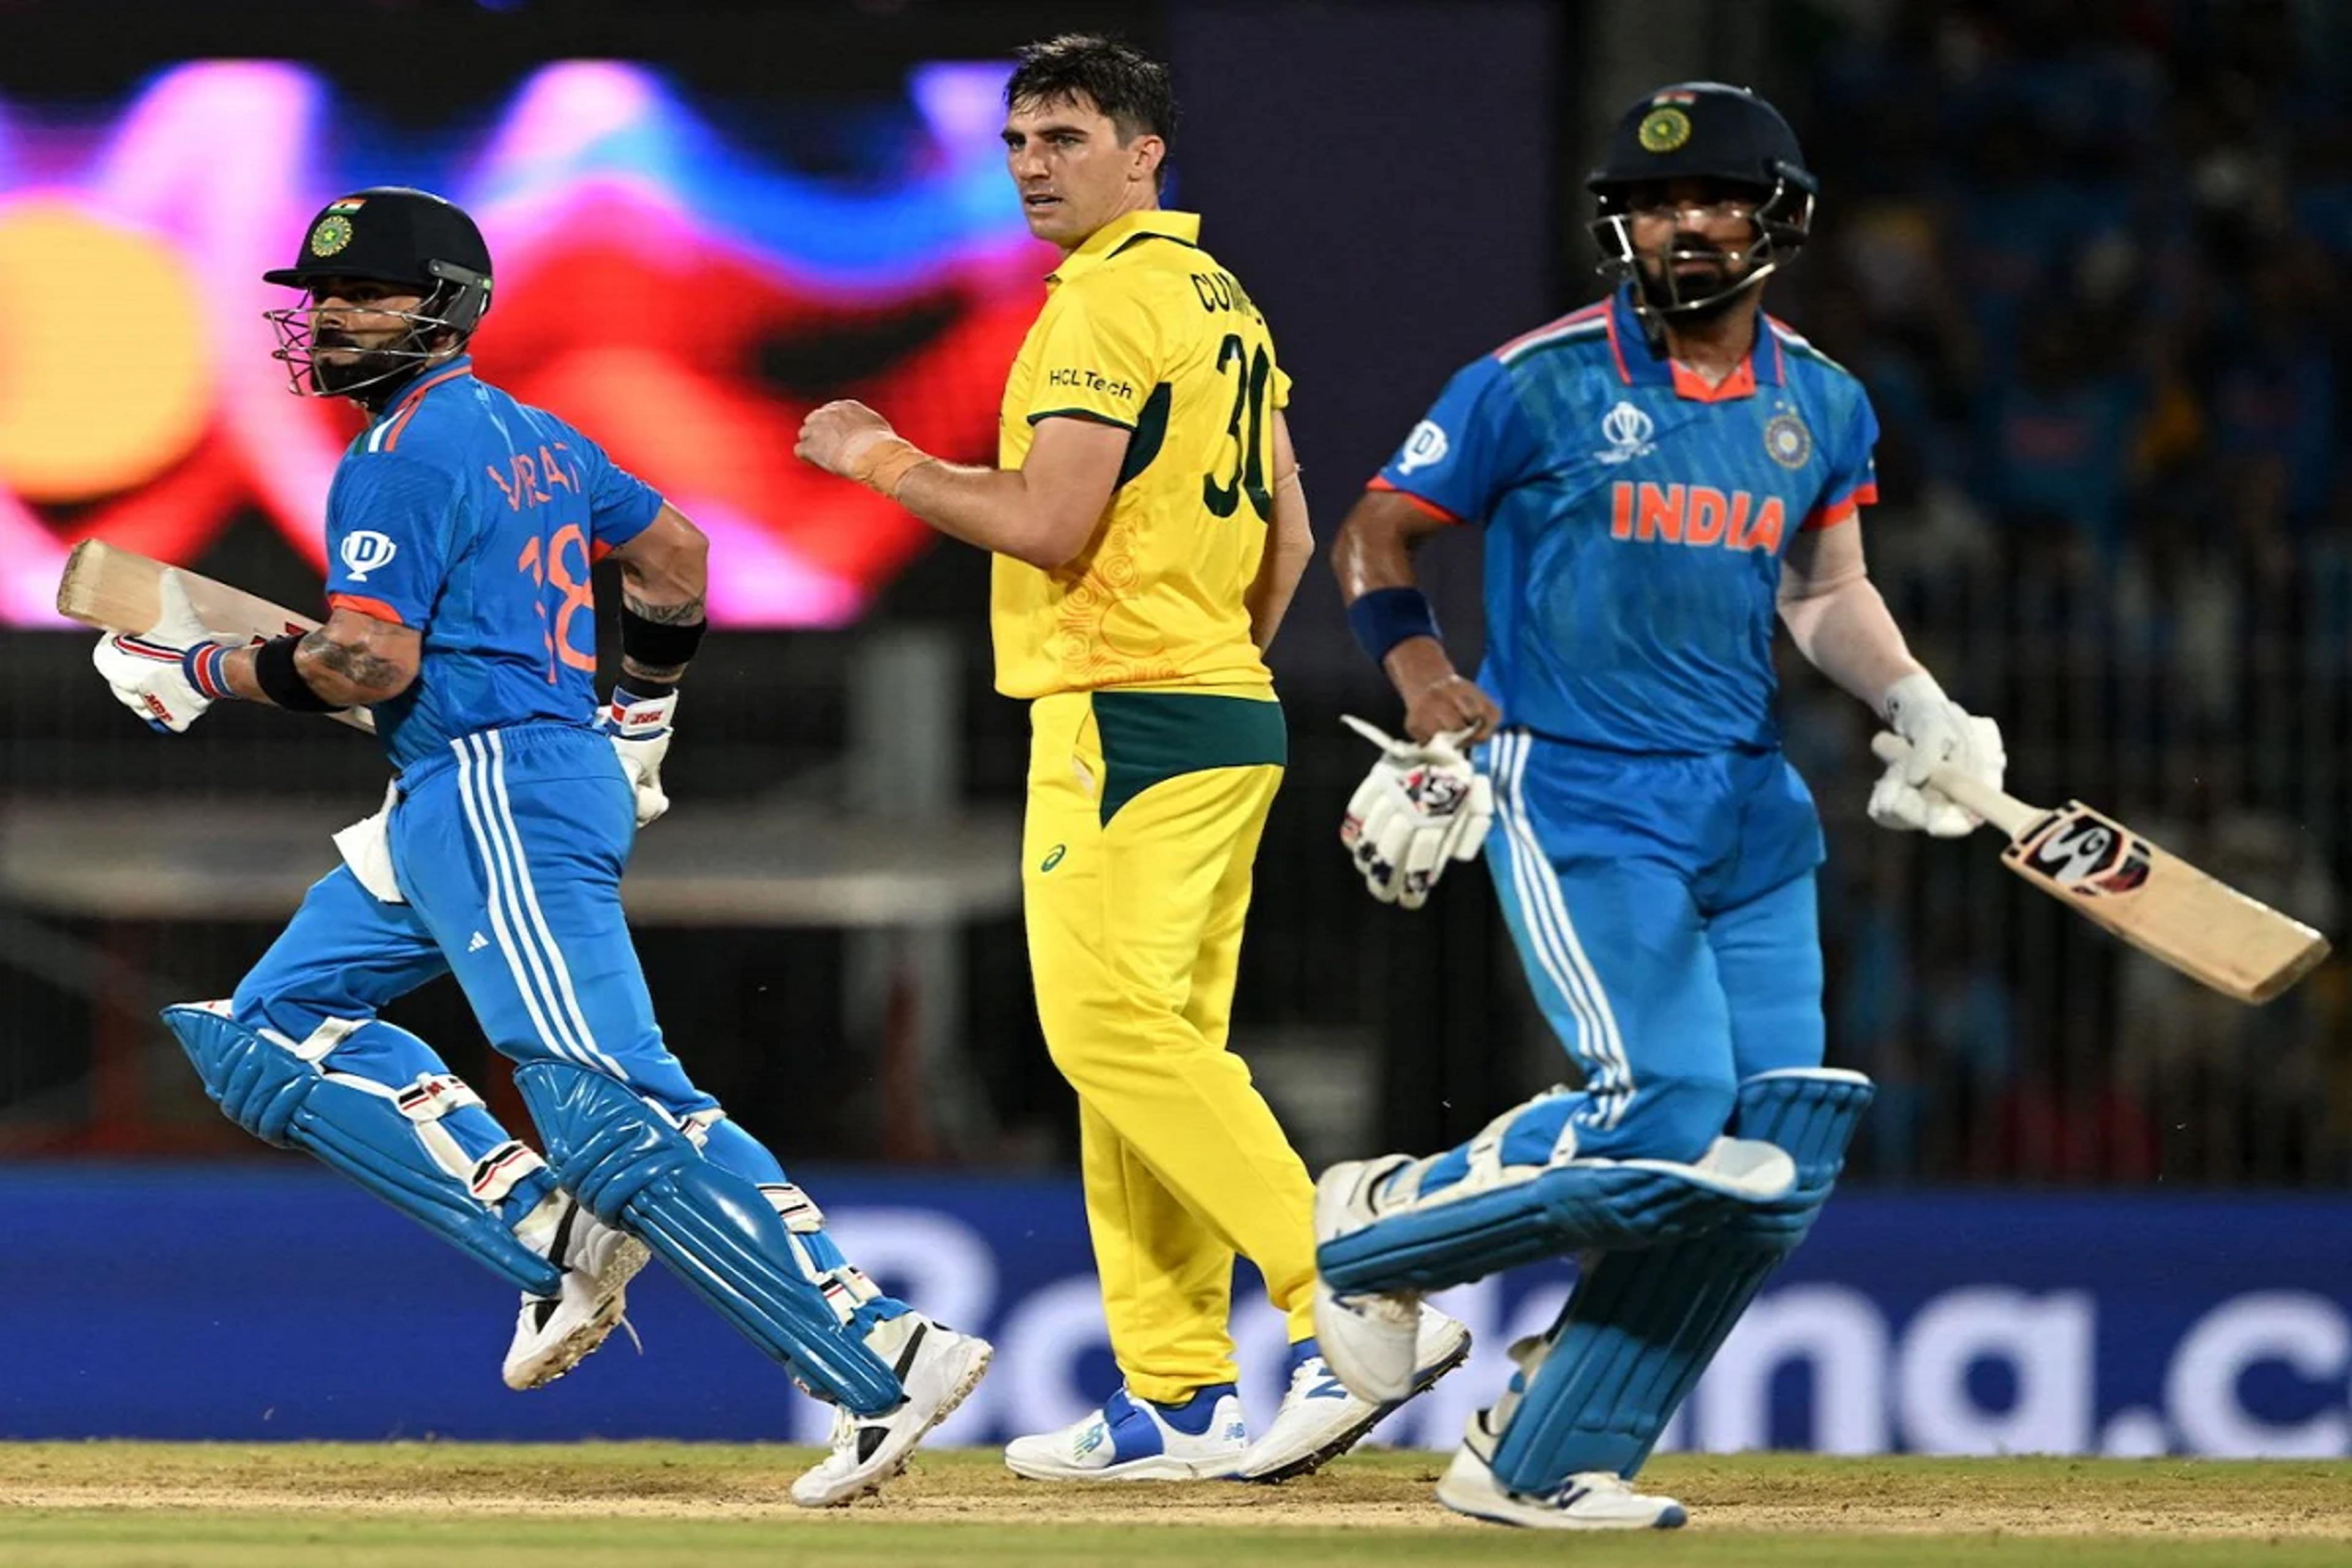 विश्व कप फाइनल की 97 गेंदों में भारत से नहीं लगा एक भी चौका-छक्का, क्या कर रहे थे कोहली-राहुल?